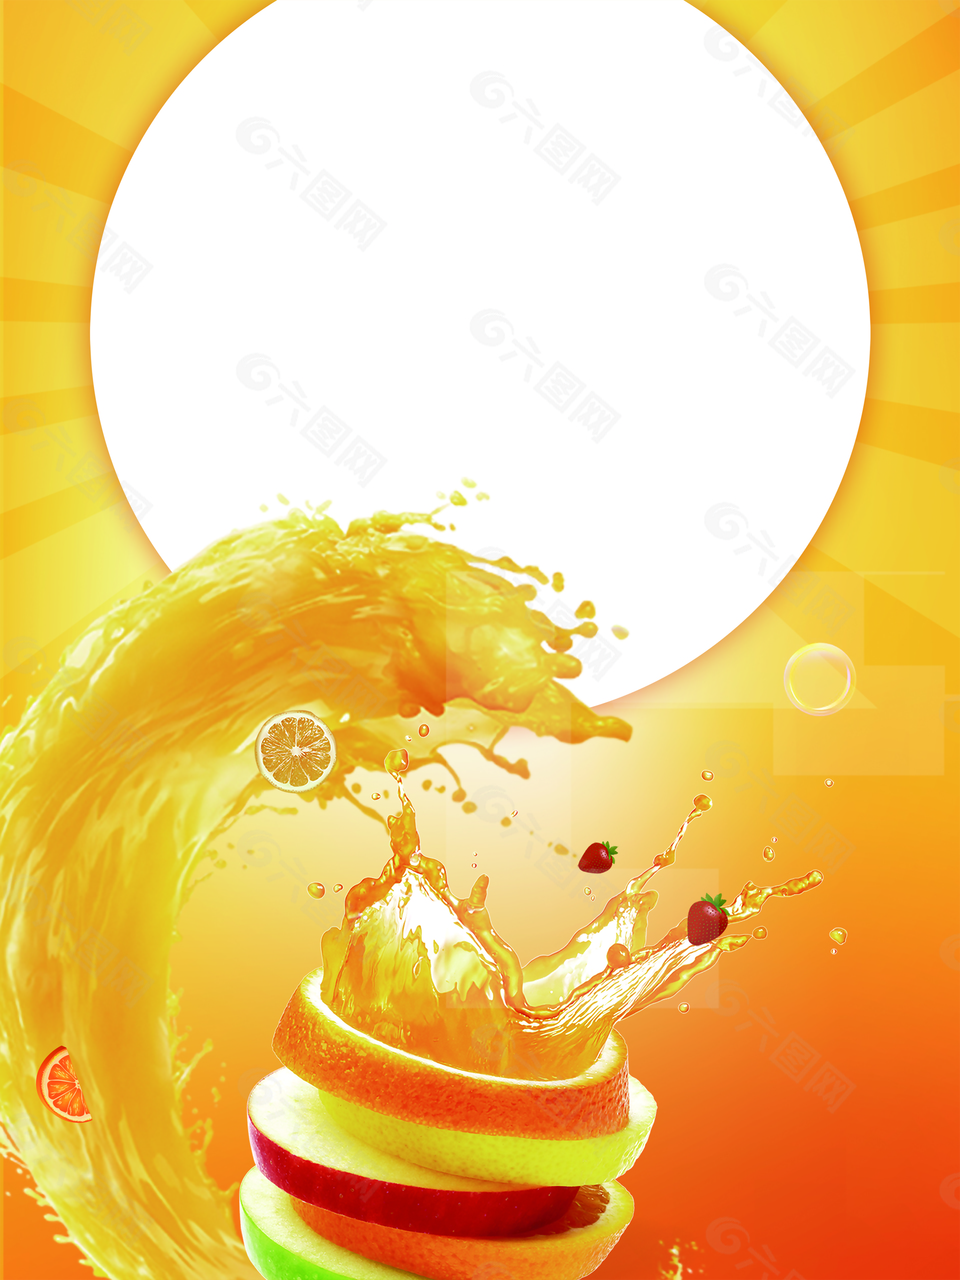 黄色创意橙汁饮品海报背景